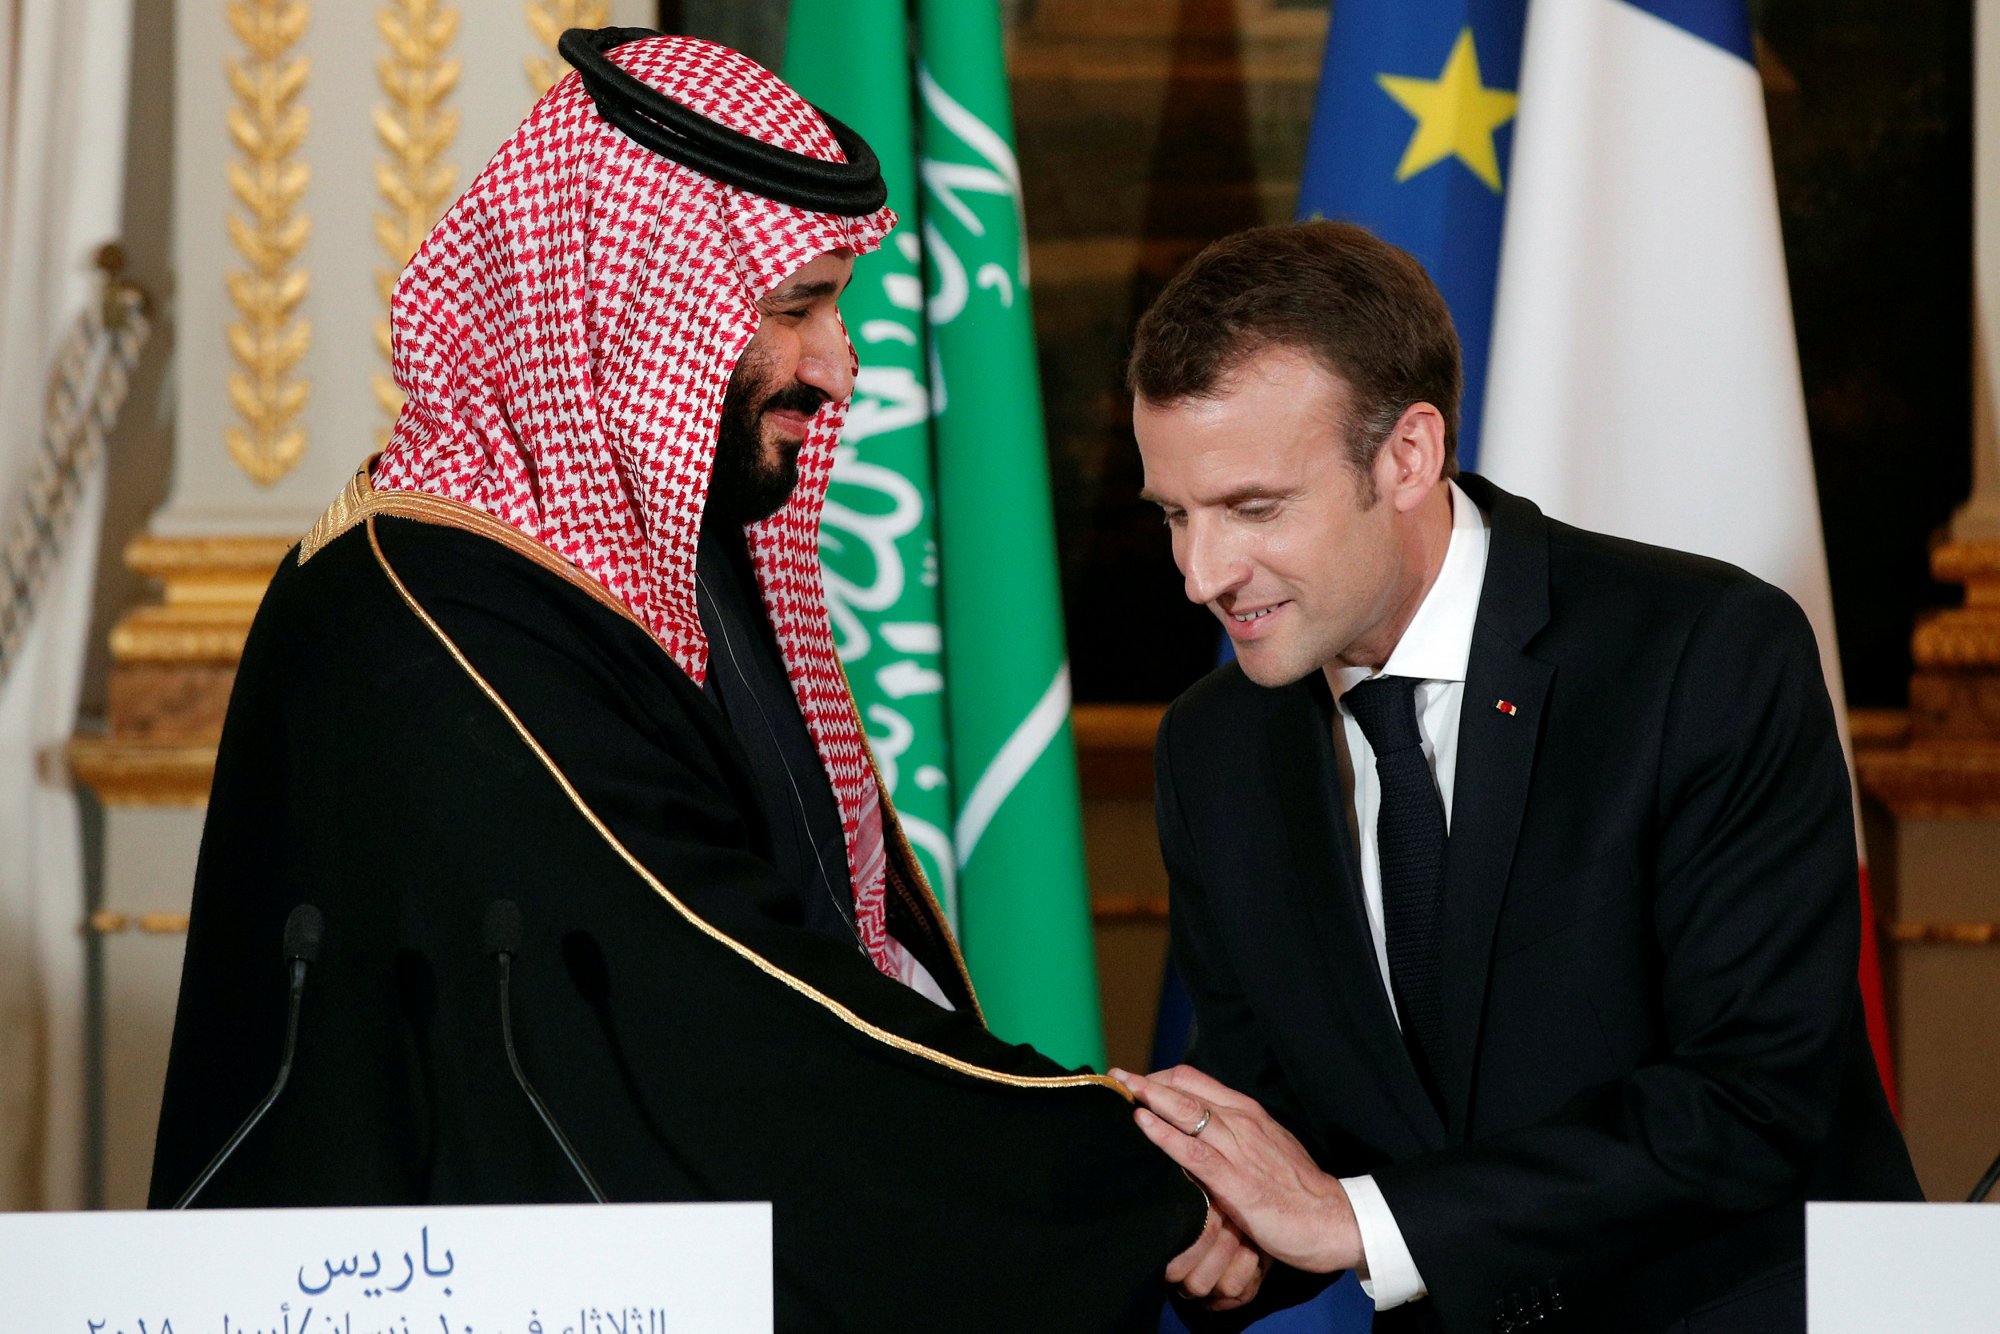 Μέση Ανατολή: Ο Μακρόν έτοιμος να συνεργαστεί με τη Σαουδική Αραβία για μια διαρκή ειρήνη στην περιοχή